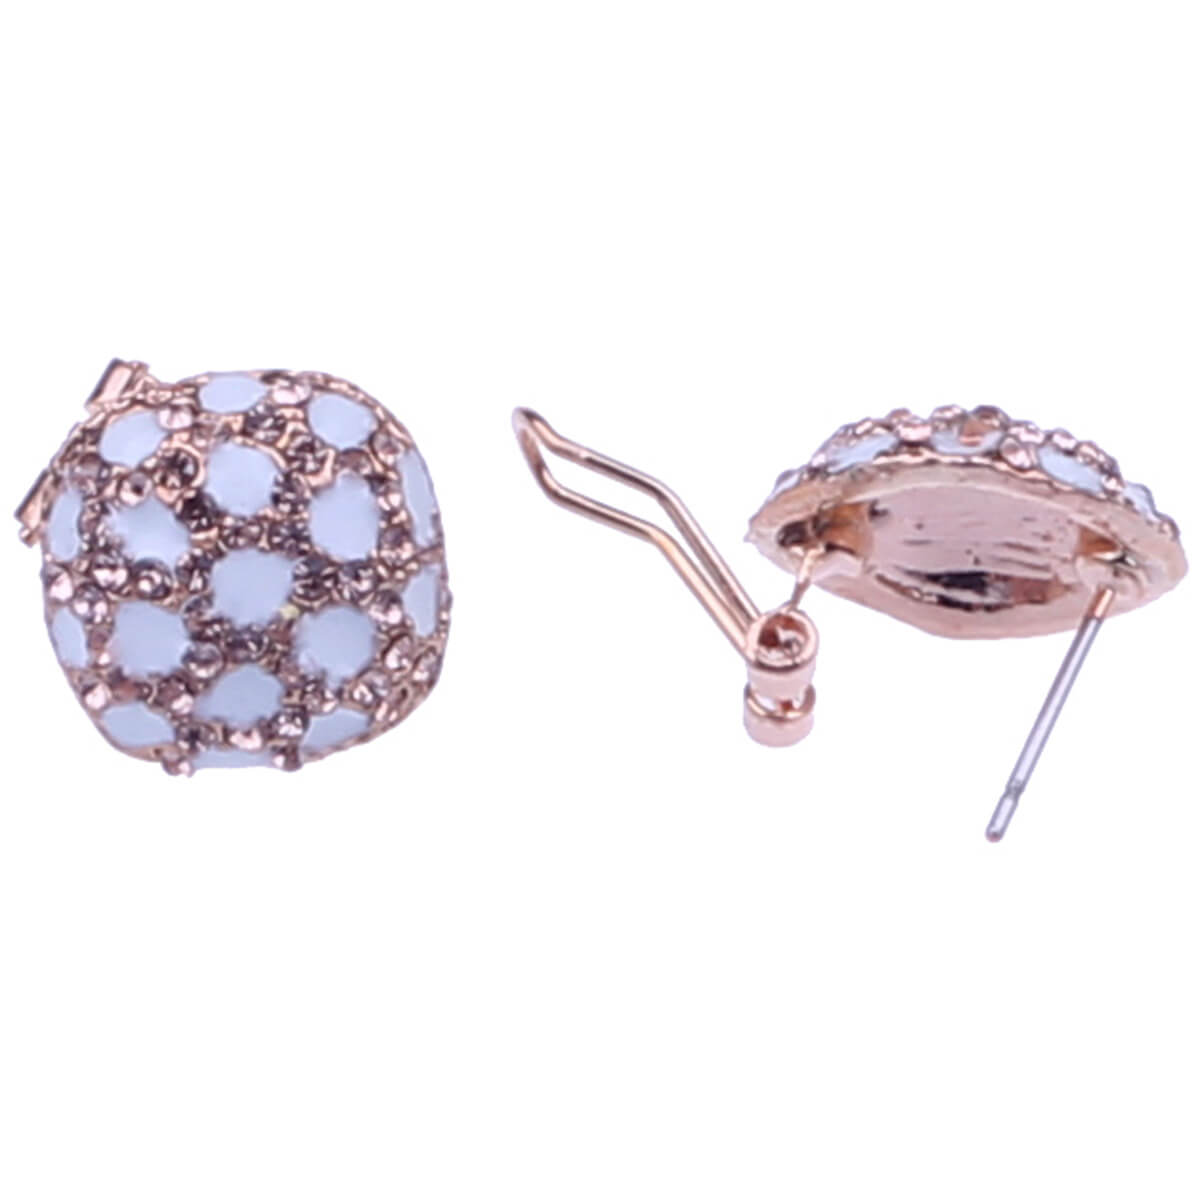 Ornate button earrings